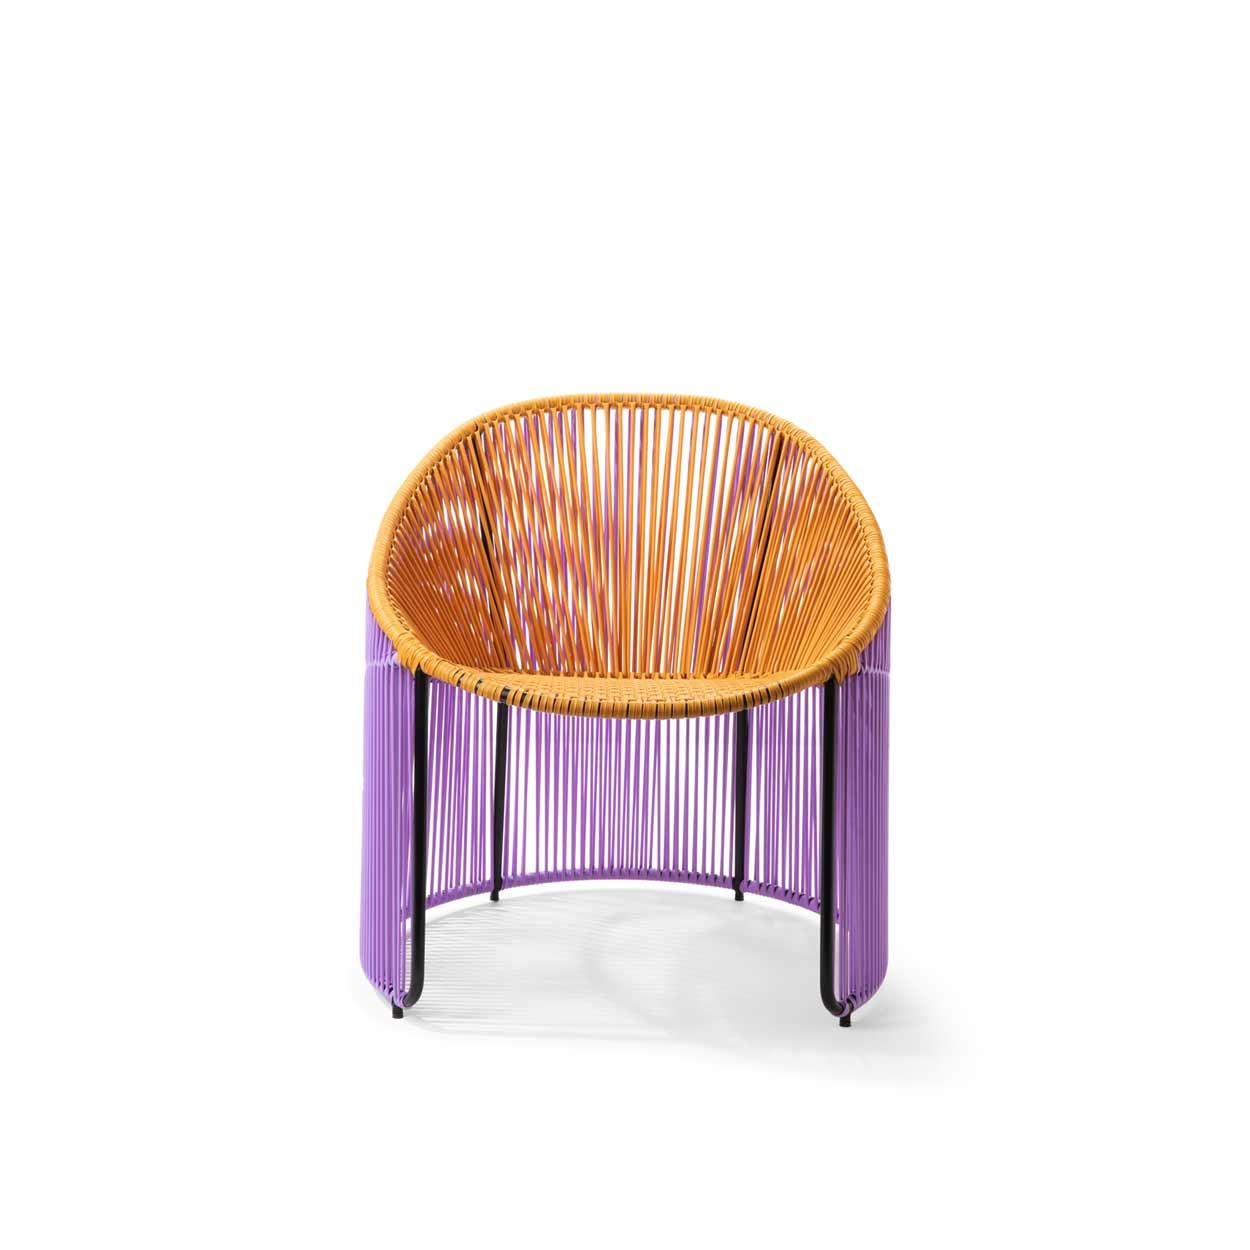 Die Farben und Formen des Cartagenas Lounge Chair sind von Sebastian Herkners Besuch in der pulsierenden kolumbianischen Küstenstadt Cartagena de Indias inspiriert. 